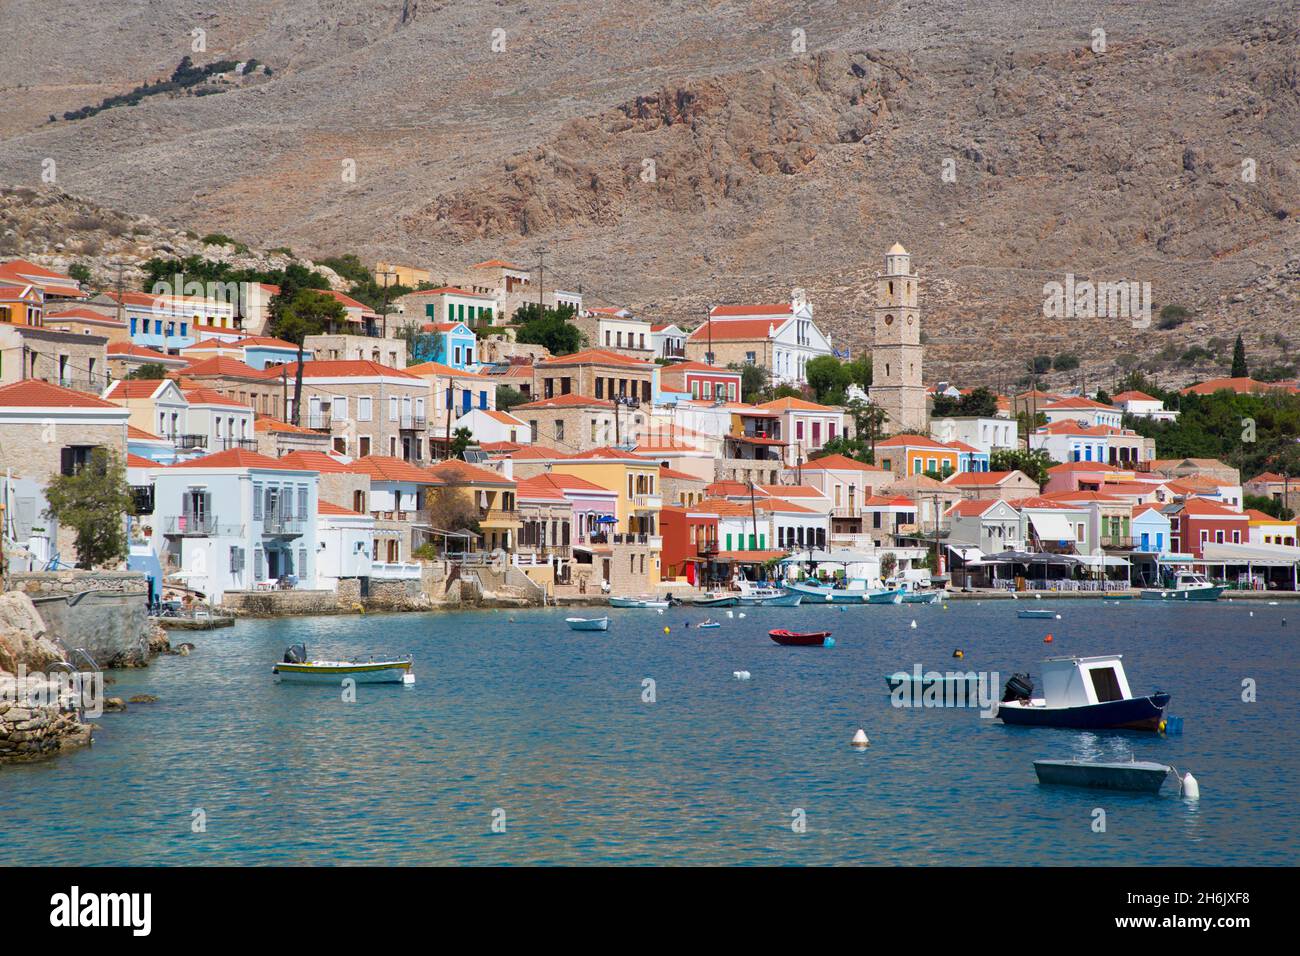 Fischerboote, Hafen von Emborio, Insel Halki (Chalki), Dodekanes-Gruppe, griechische Inseln, Griechenland, Europa Stockfoto